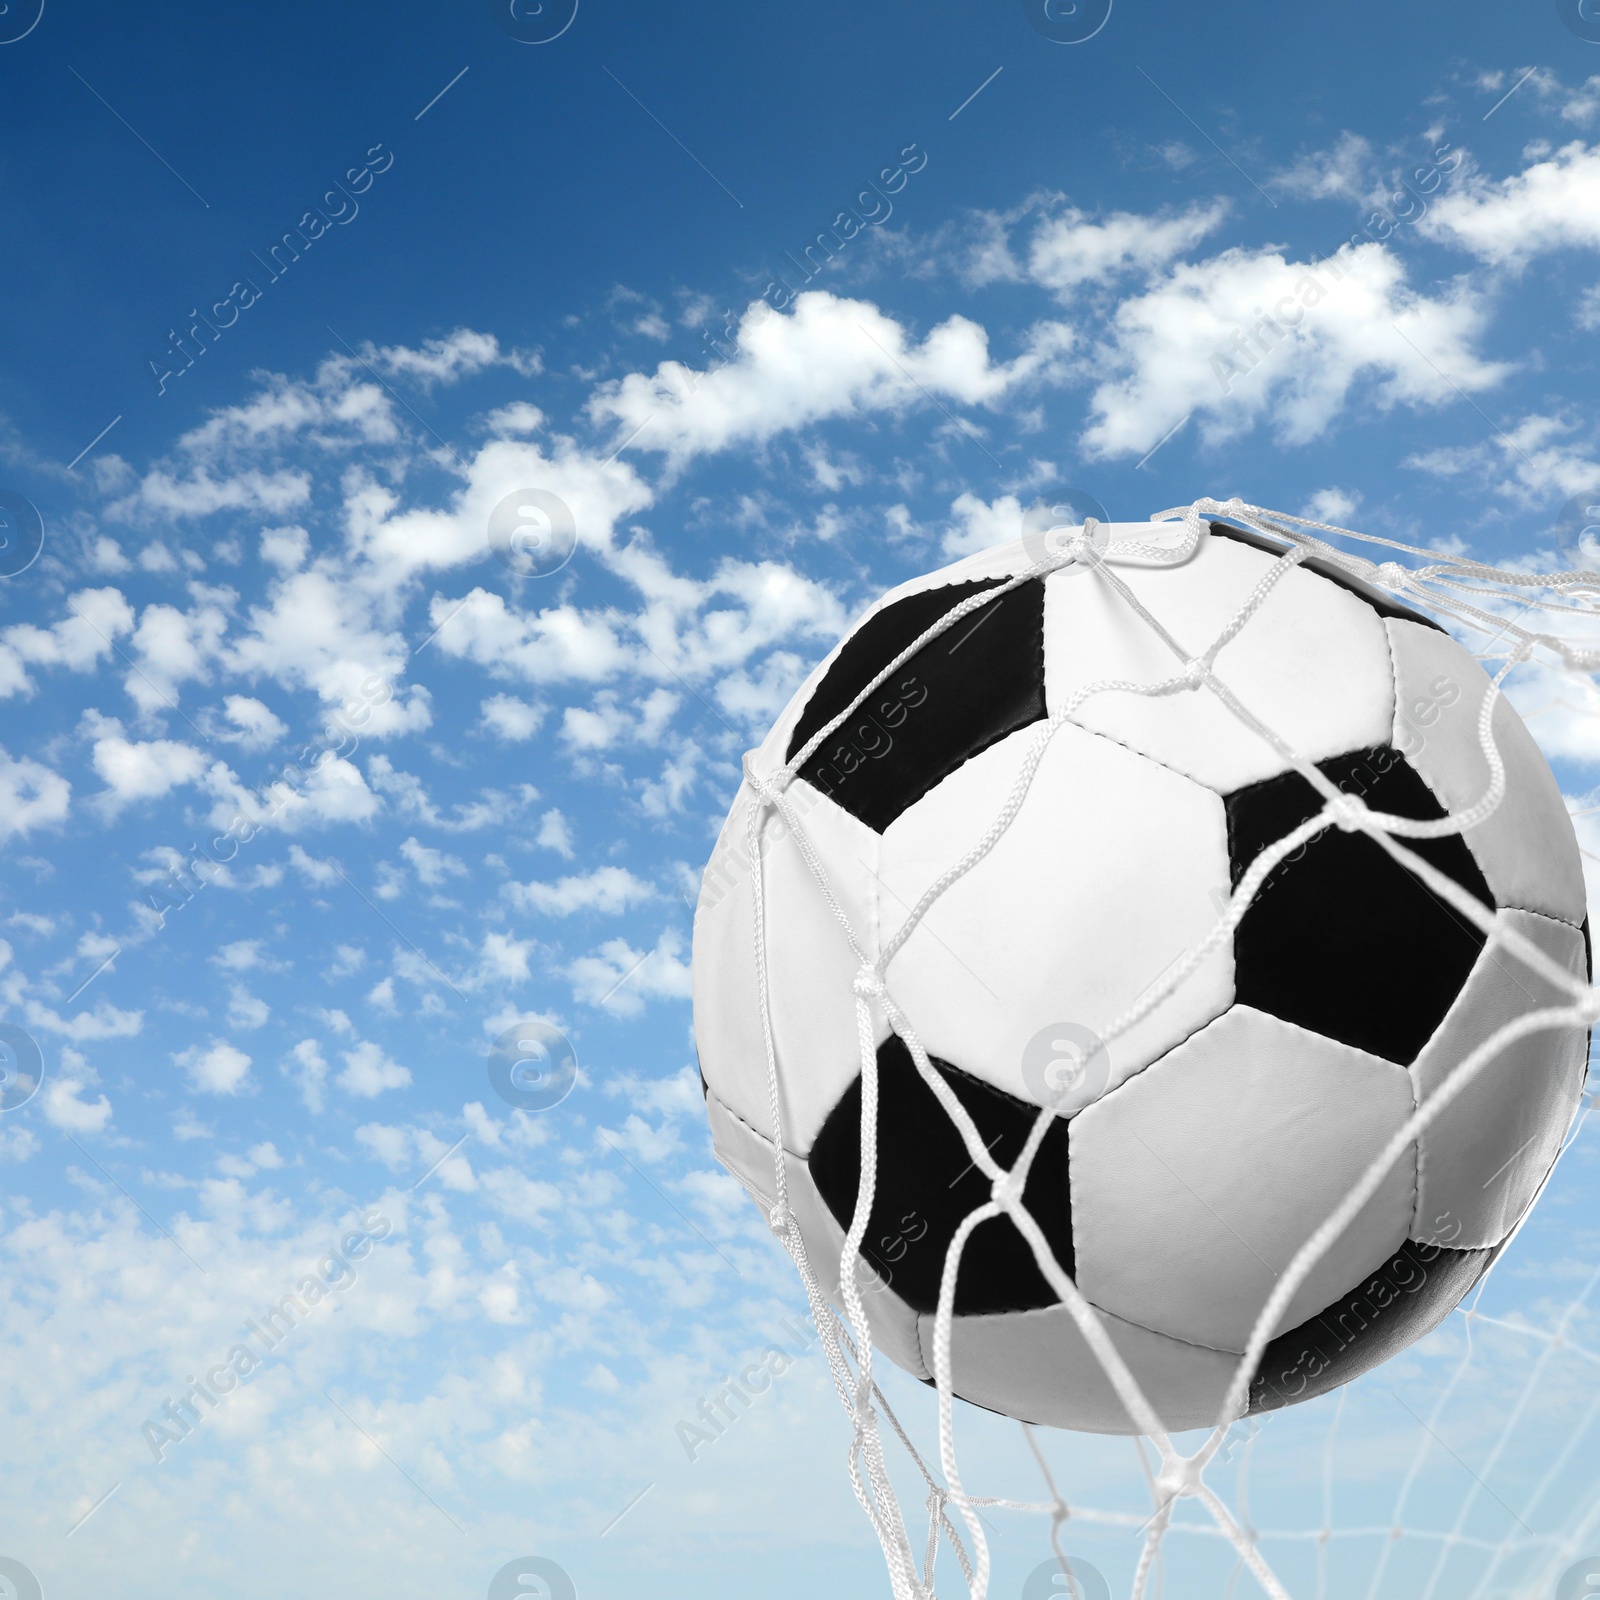 Image of Soccer ball in net against blue sky